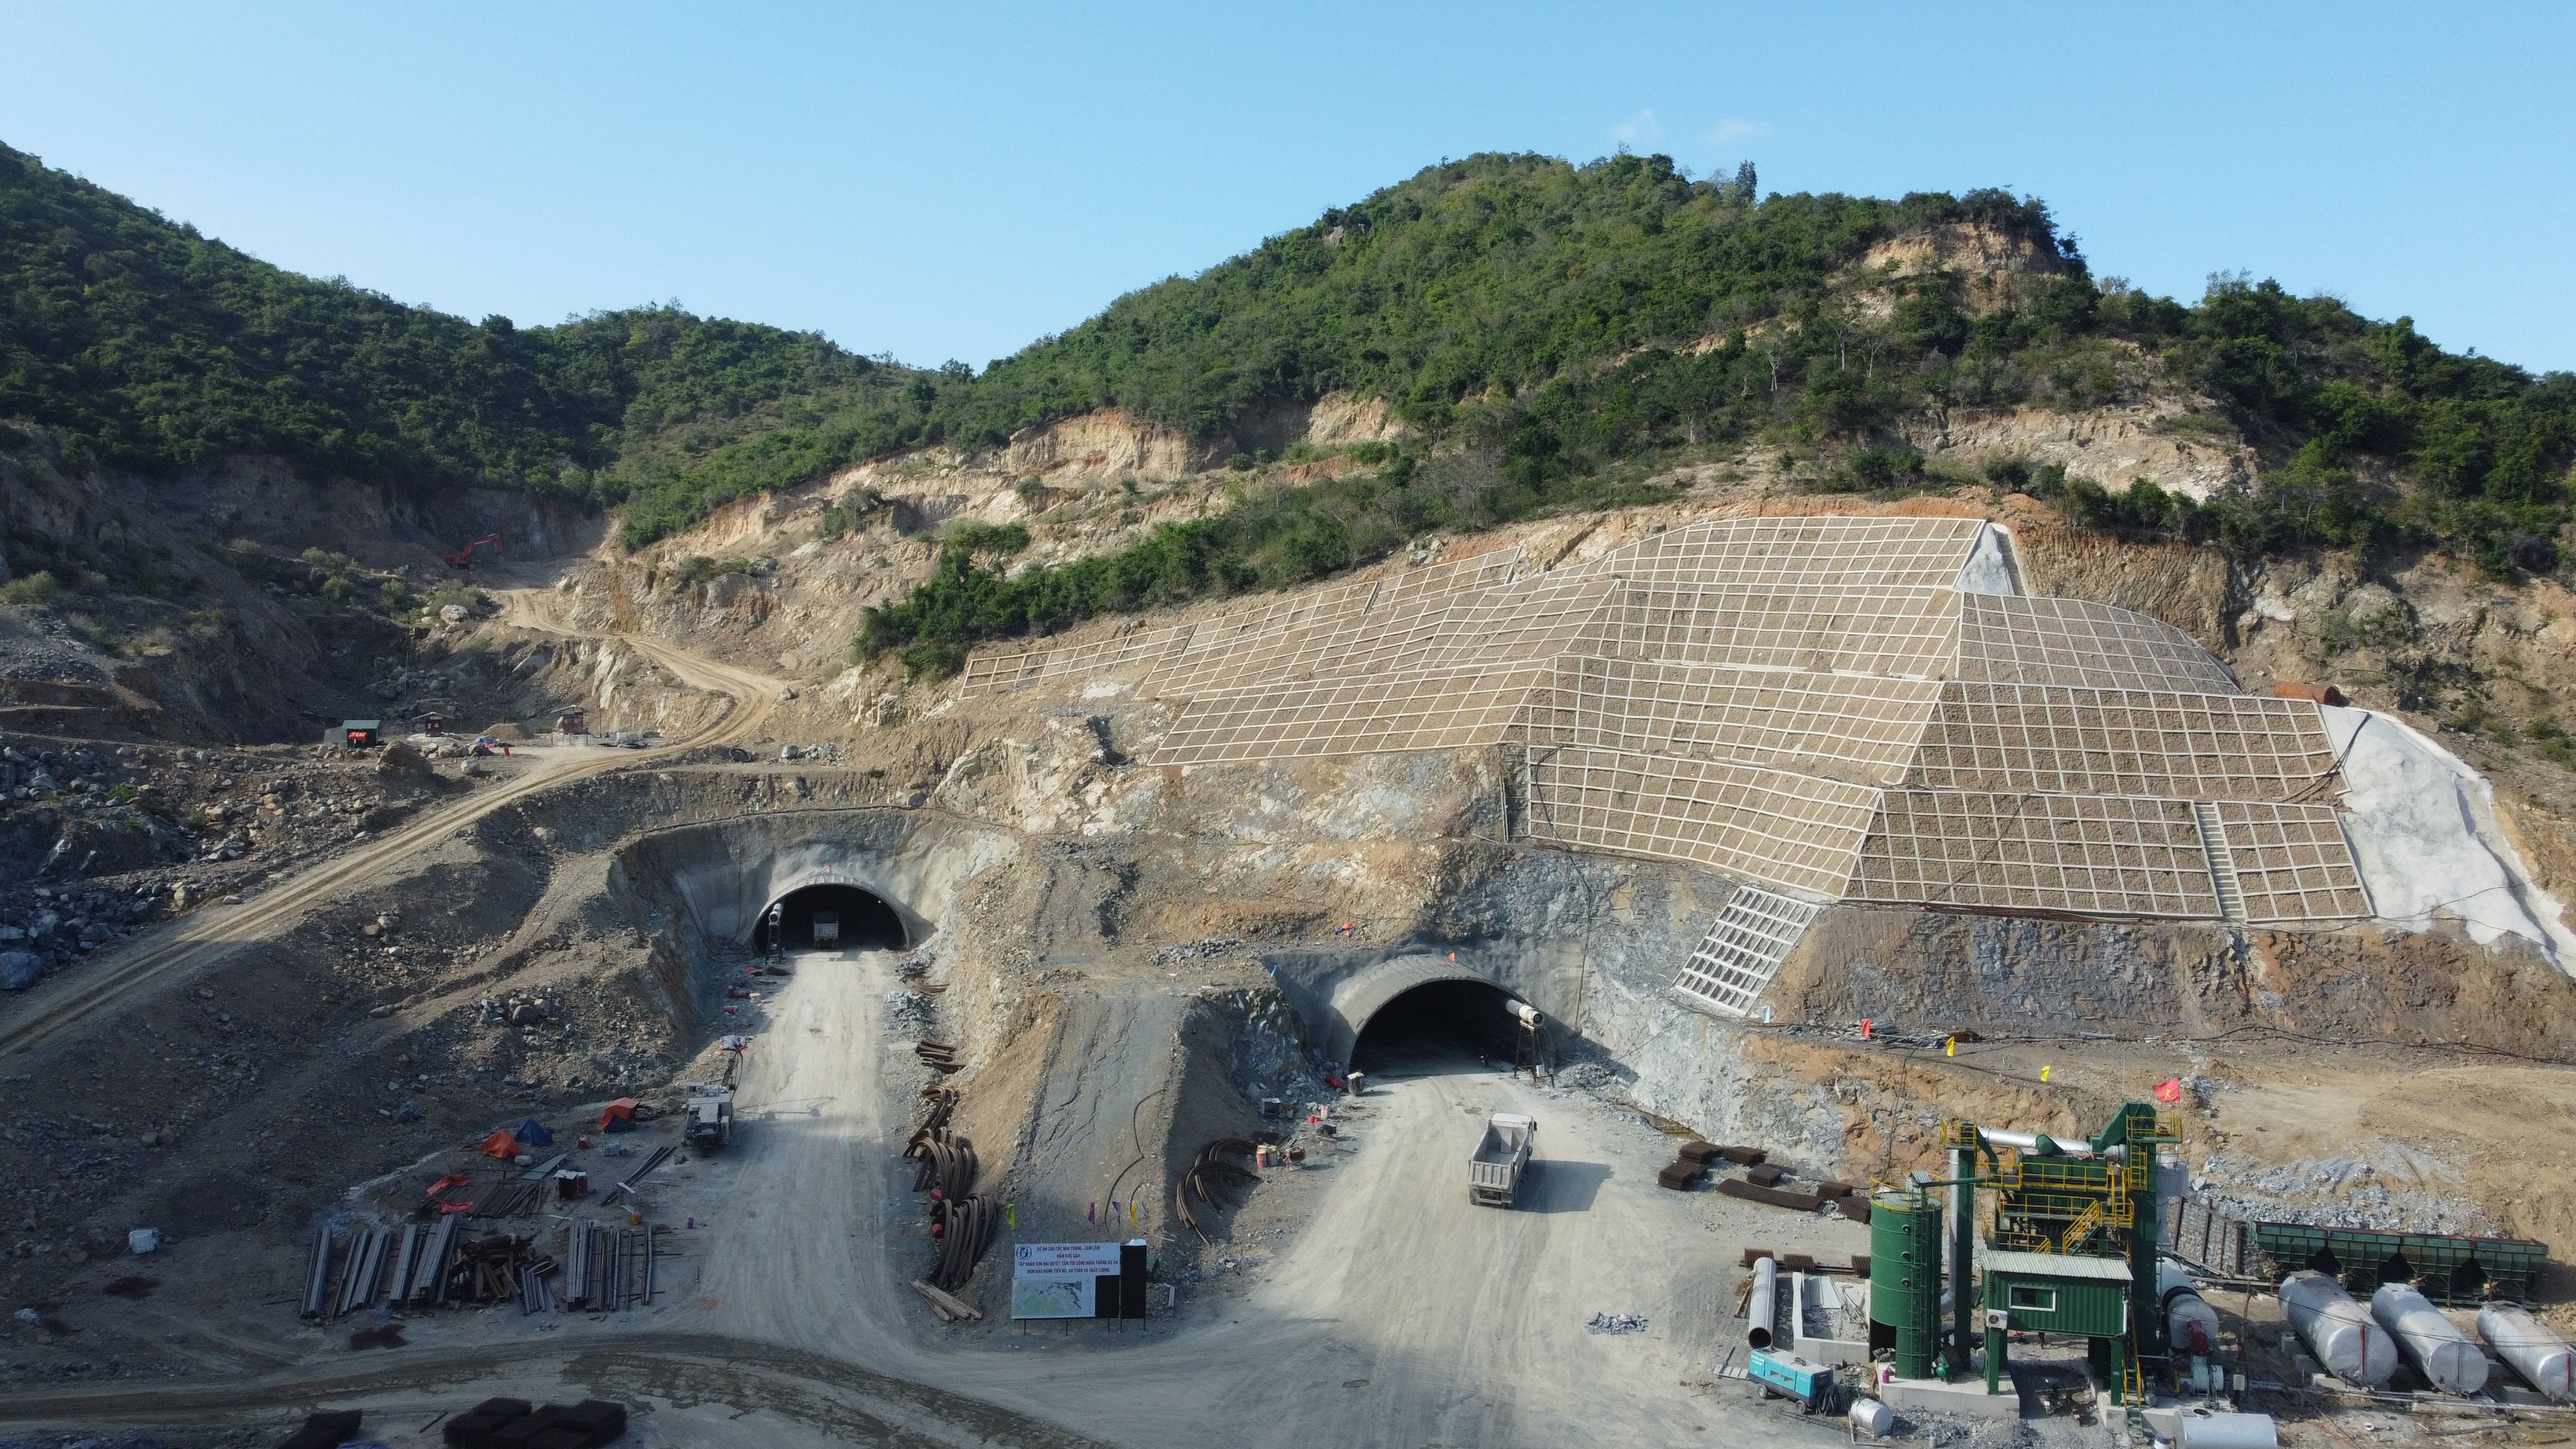 Cao tốc Nha Trang - Cam Lâm hiện đạt sản lượng 39,3% giá trị hợp đồng, đáp ứng kế hoạch. Dự án có chiều dài hơn 49km thuộc tỉnh Khánh Hòa, tổng mức đầu tư hơn 7.600 tỷ đồng, được đầu tư theo hình thức PPP, hợp đồng BOT